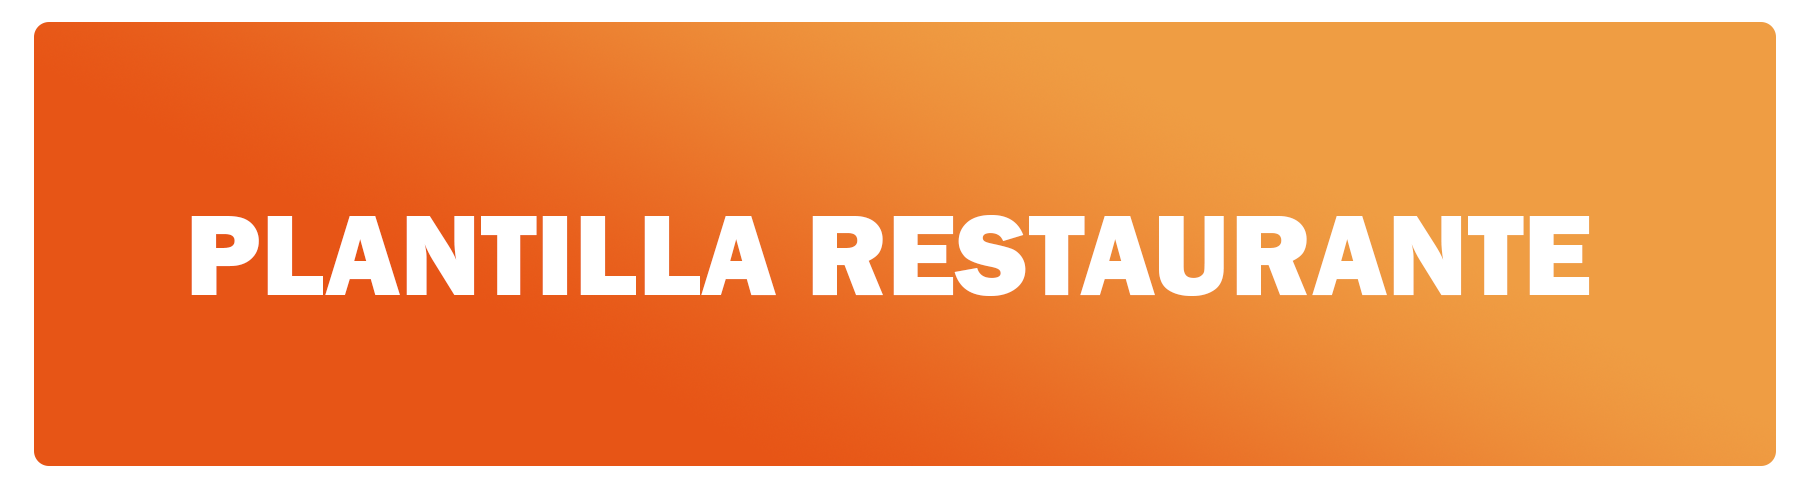 GitHub - OsmanJimenez/Plantilla-Restaurante: Esta plantilla ha sido ...